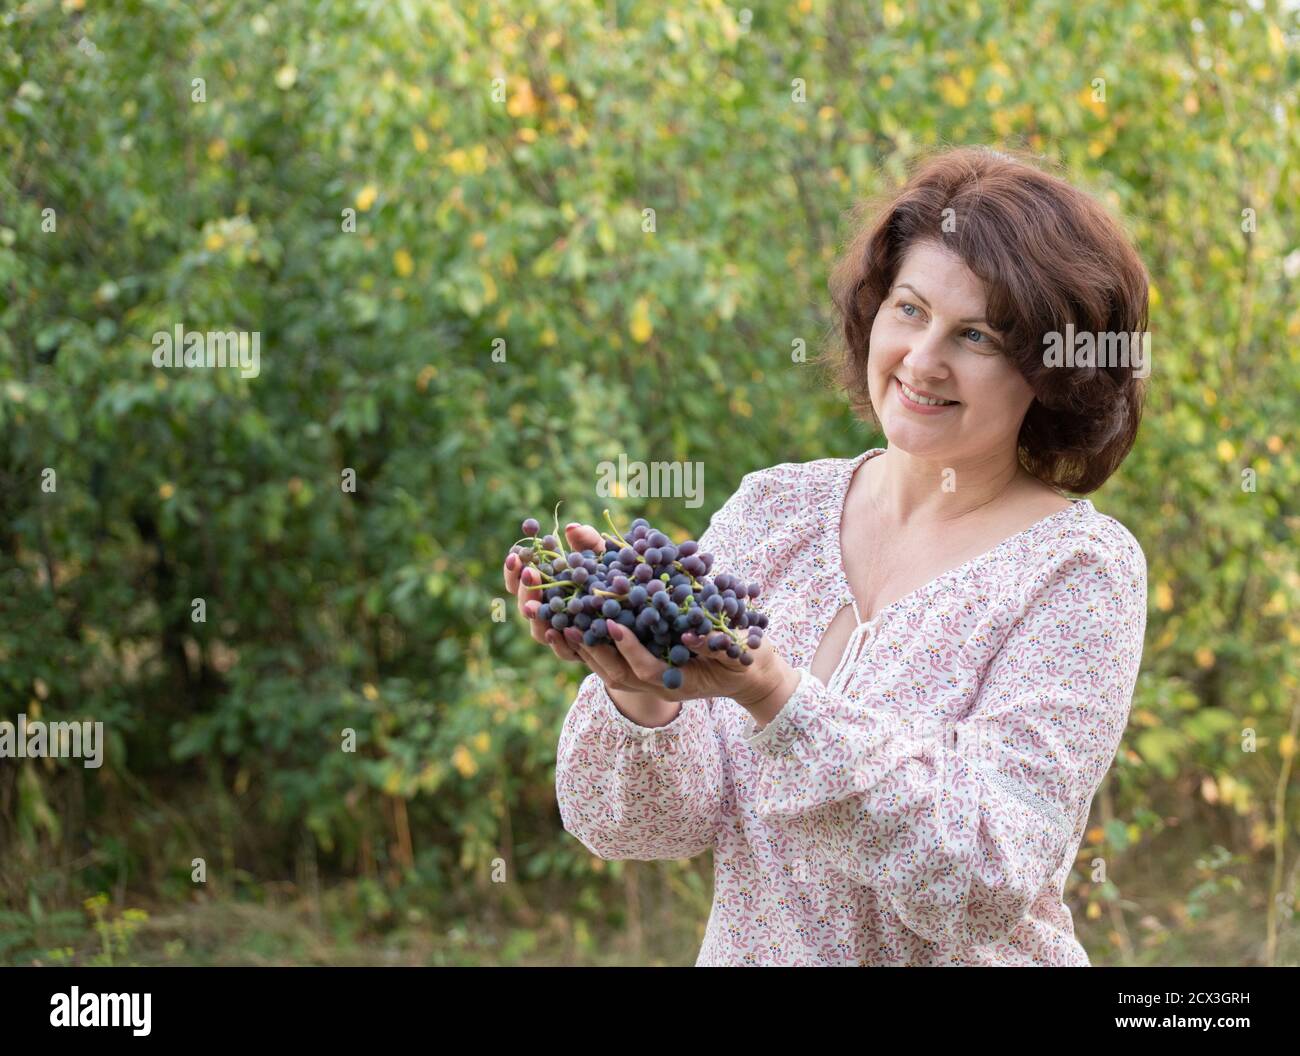 Isabella Trauben in weiblichen Händen. Wird in der Weinherstellung verwendet Stockfoto